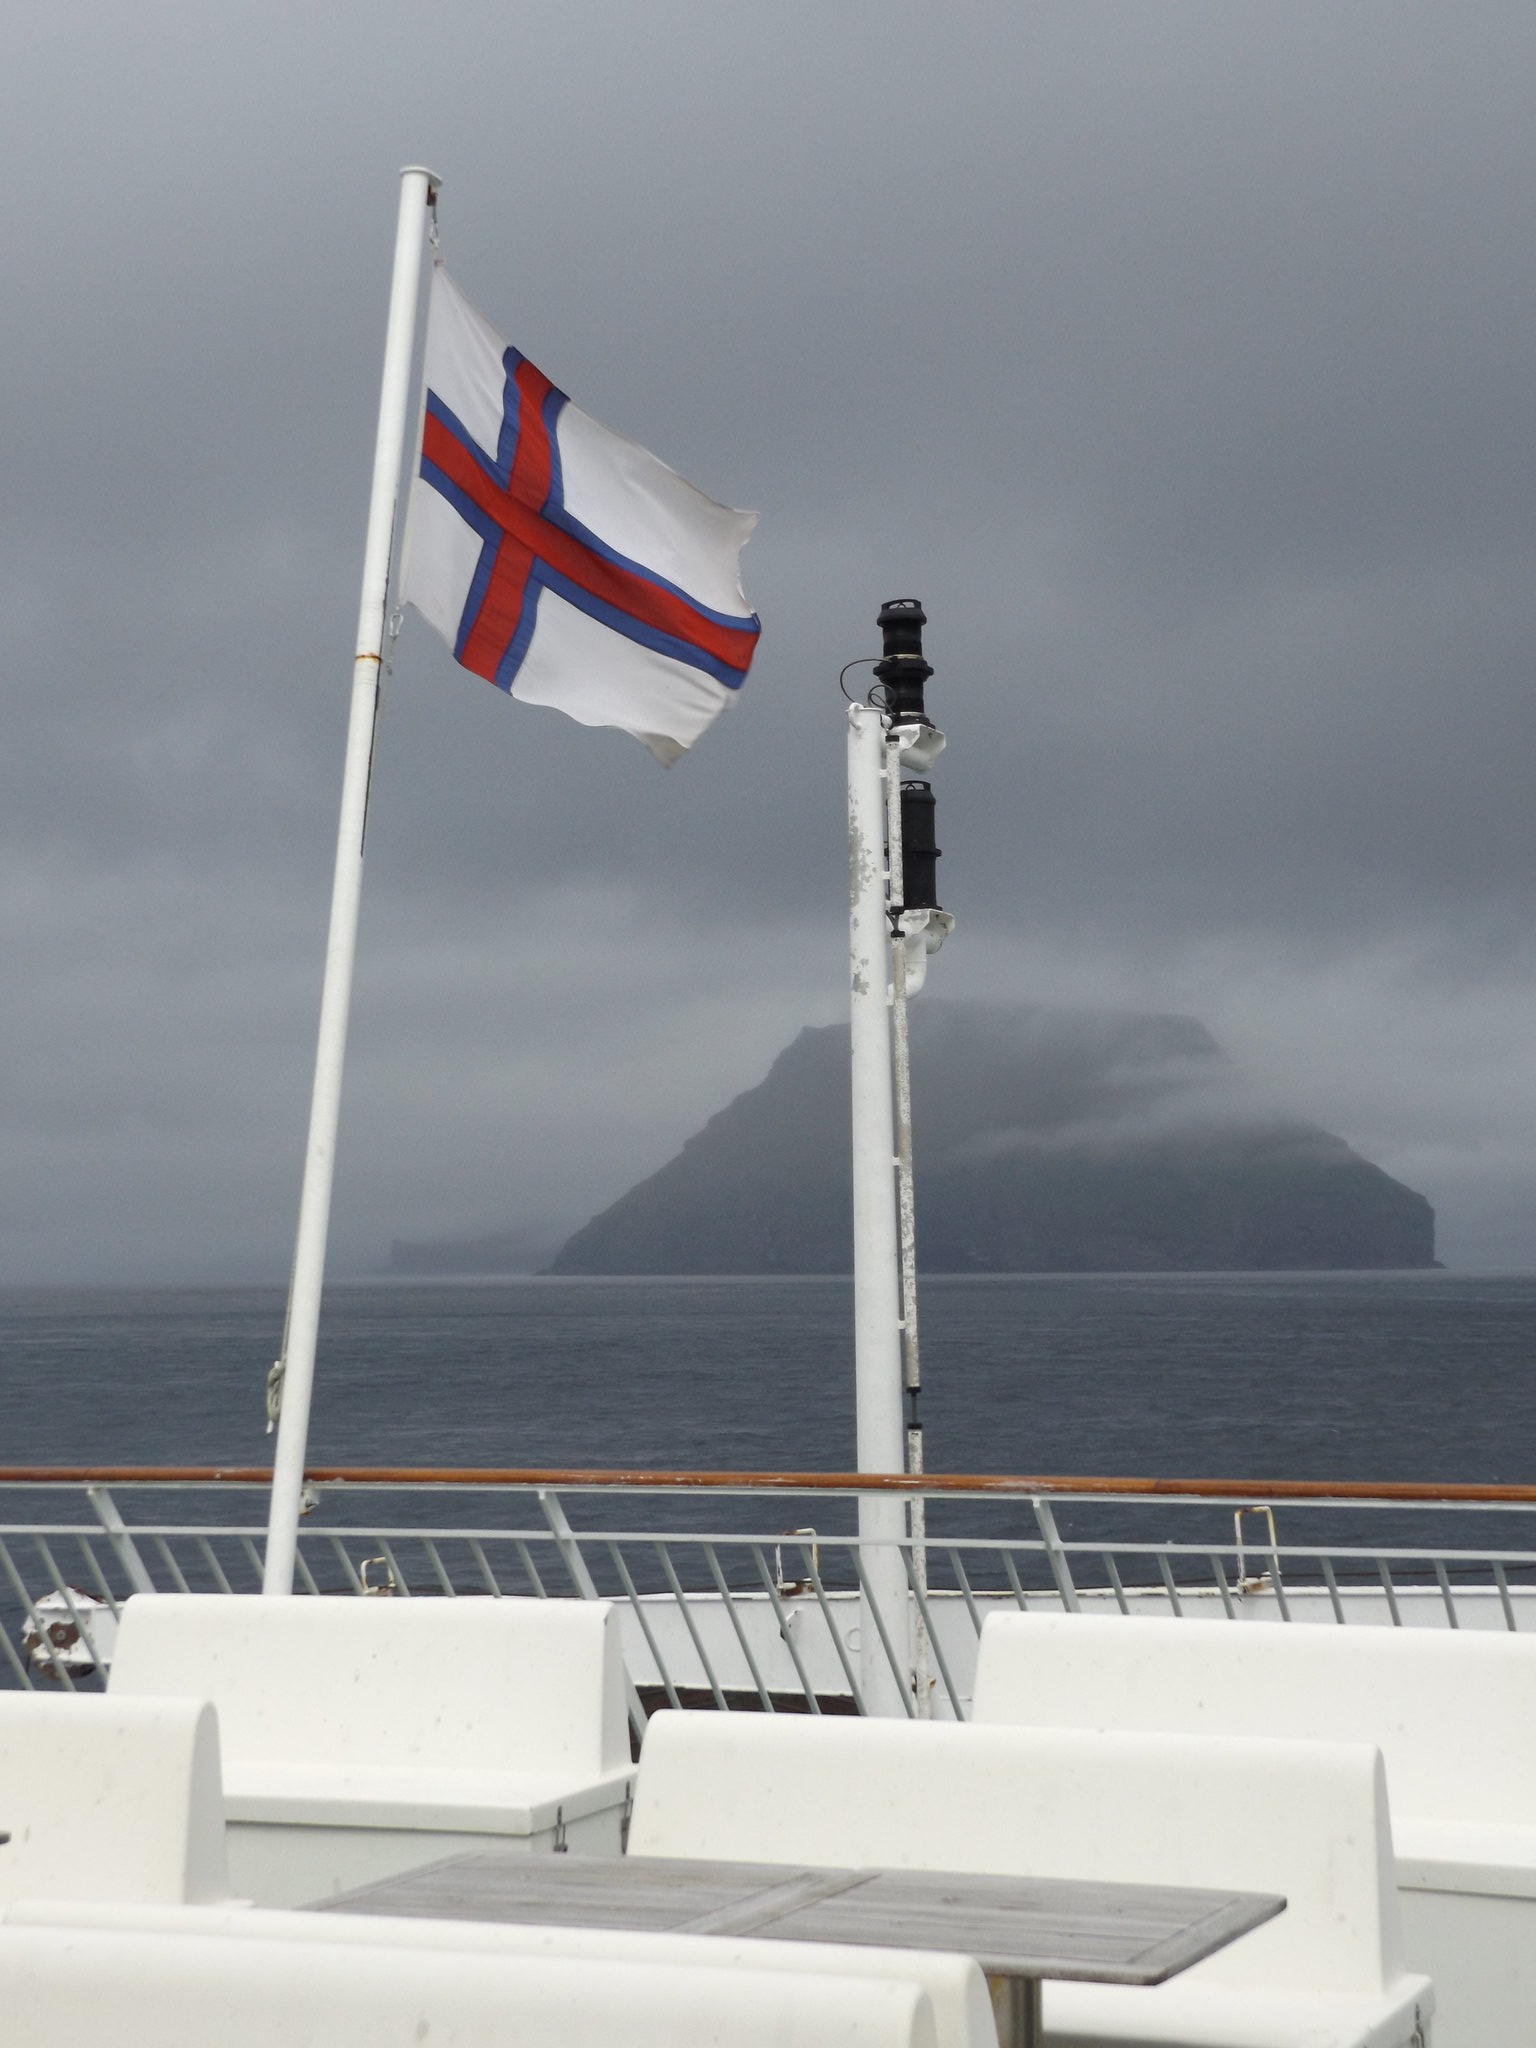 Lítla Dímun from the Stern of the MV Smyril, Faroe Islands, 13 July 2018